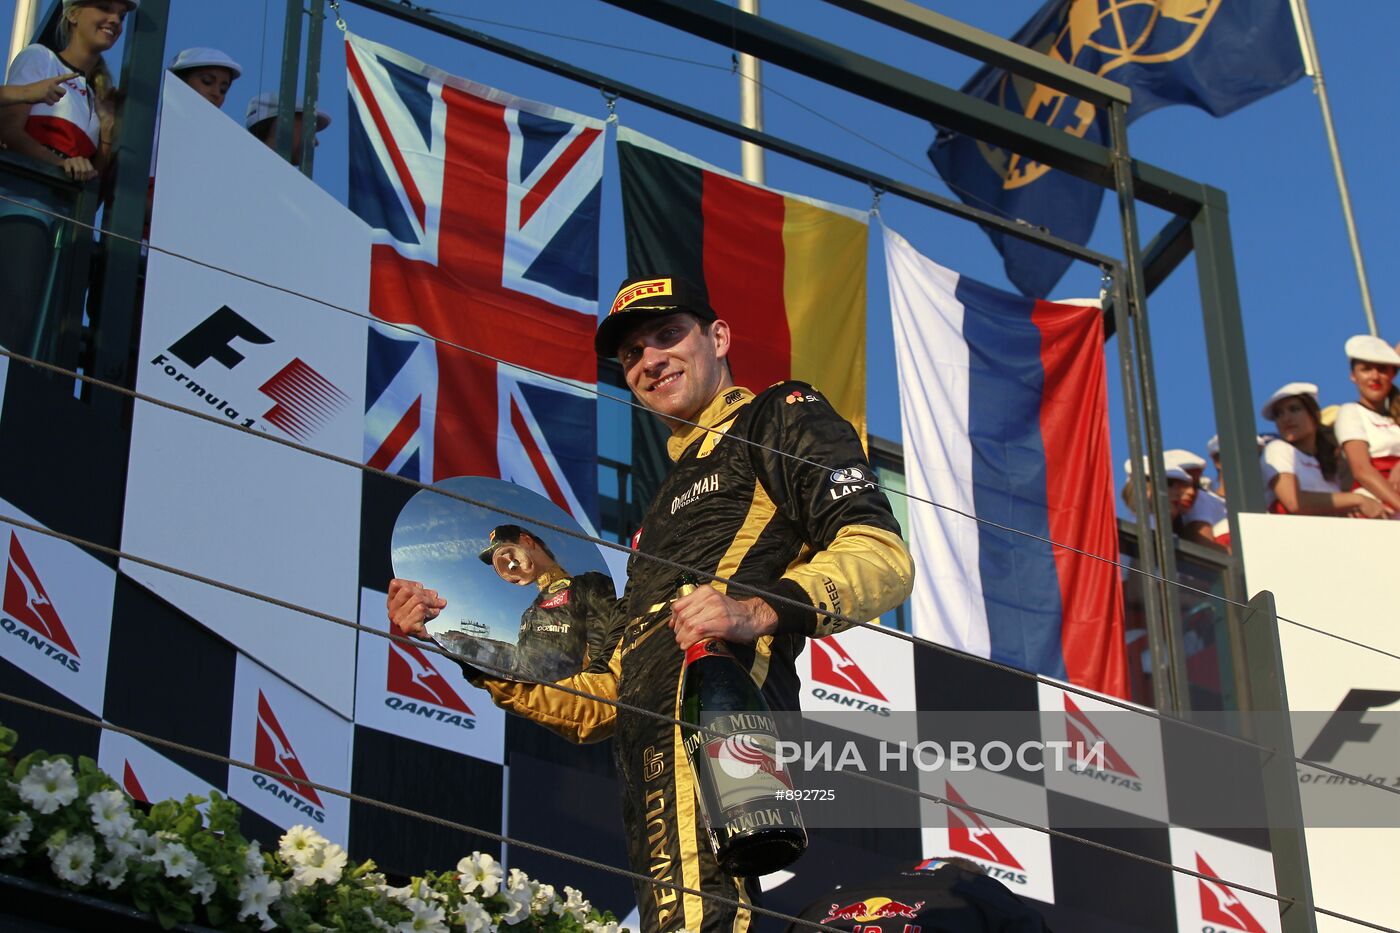 Виталий Петров финишировал третьим на Гран-при Австралии